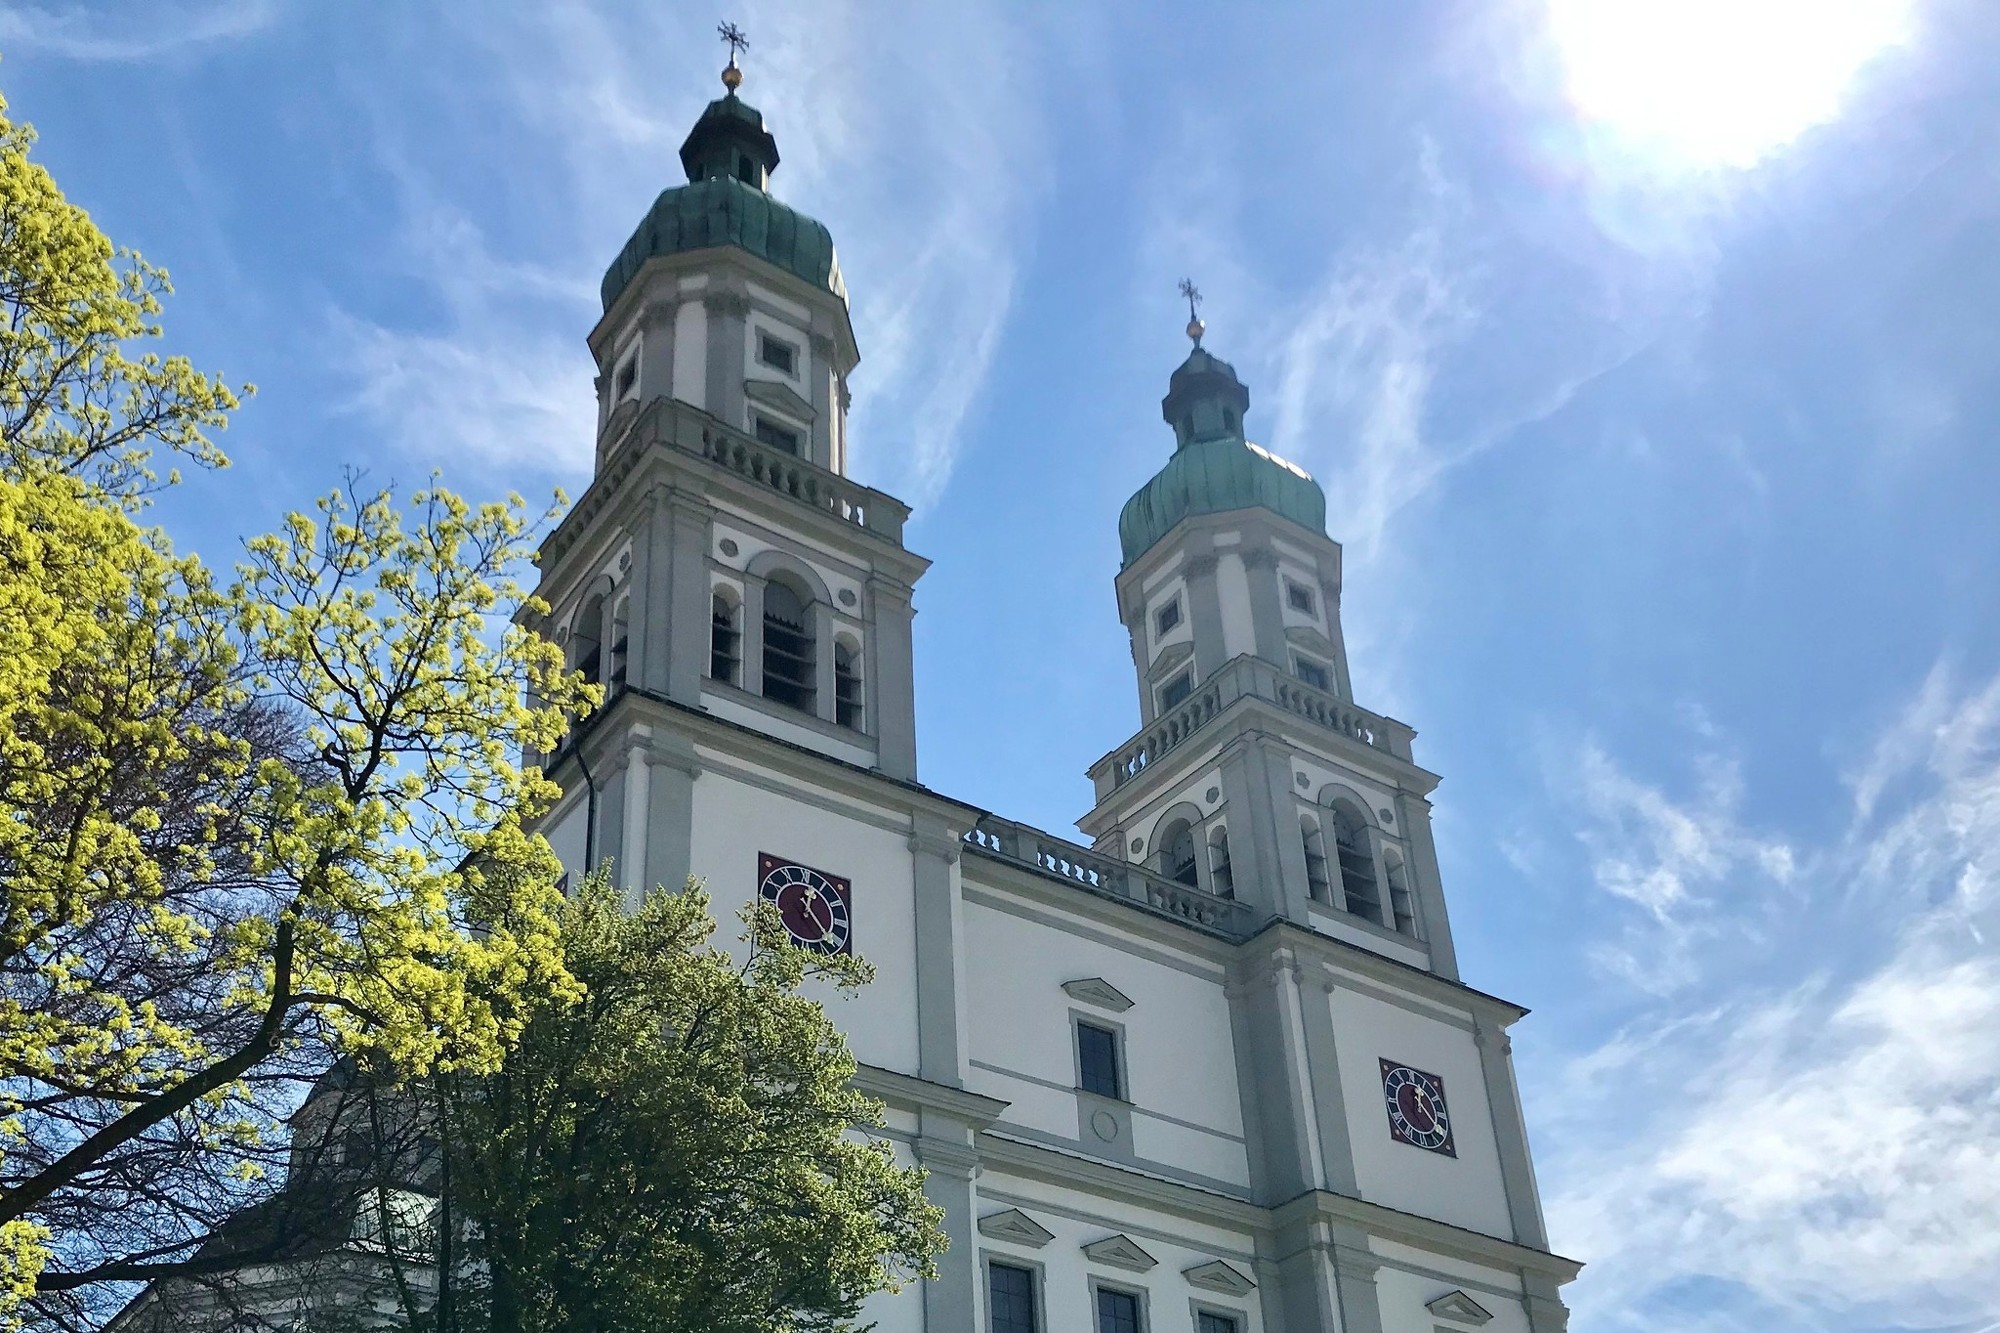 Außenansicht der Basilika St. Lorenz